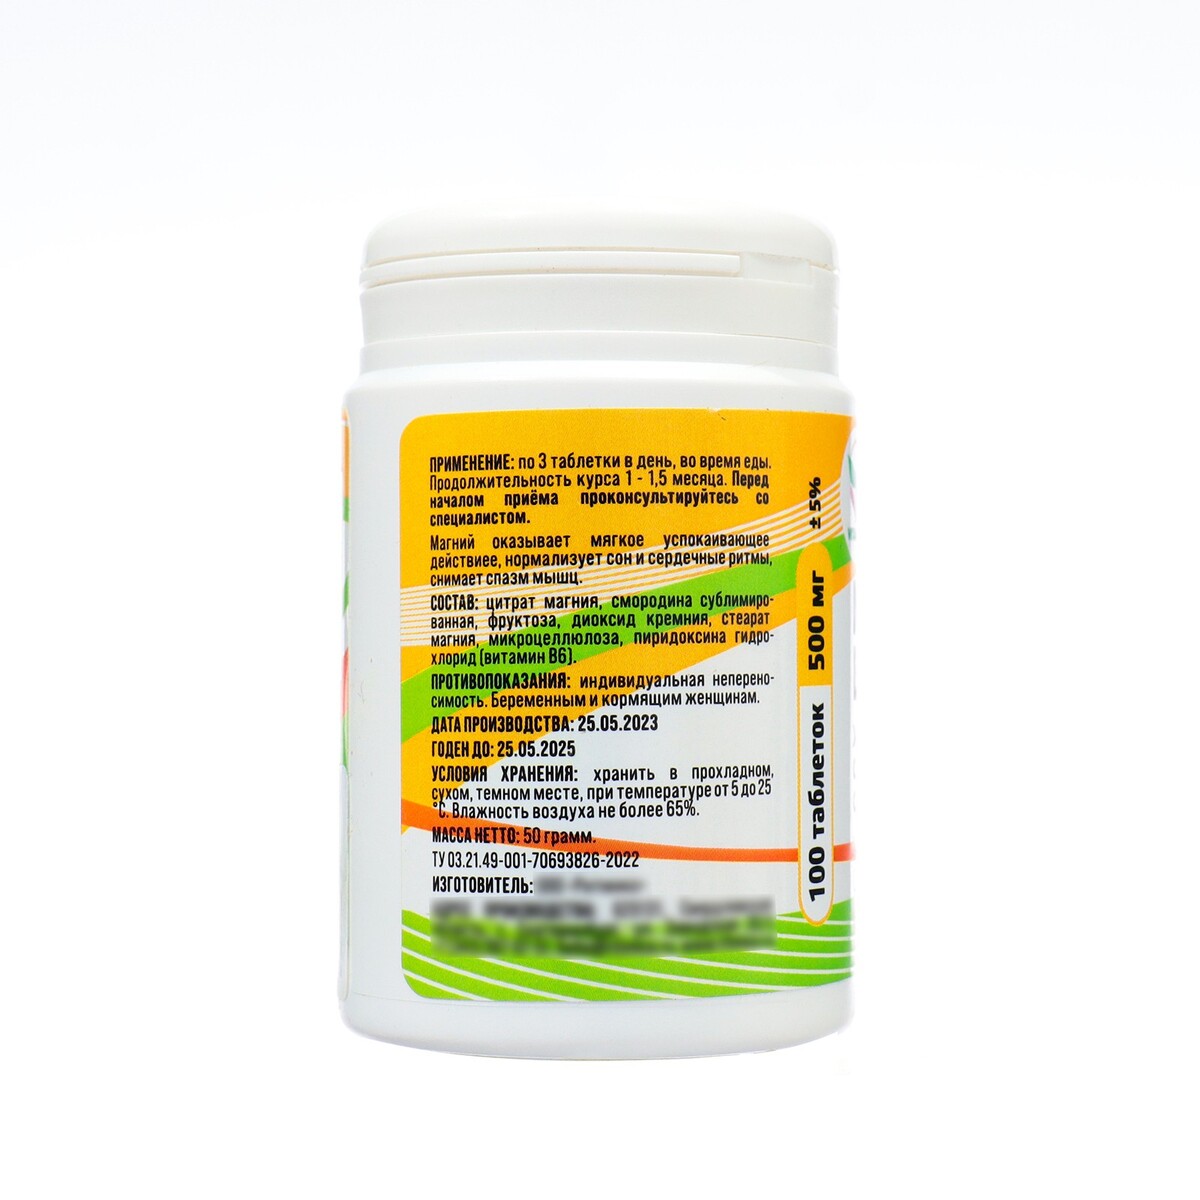 Магний в6 жевательный с натуральной смородиной, 100 таблеток по 500 мг Vitamuno 08129595 - фото 3